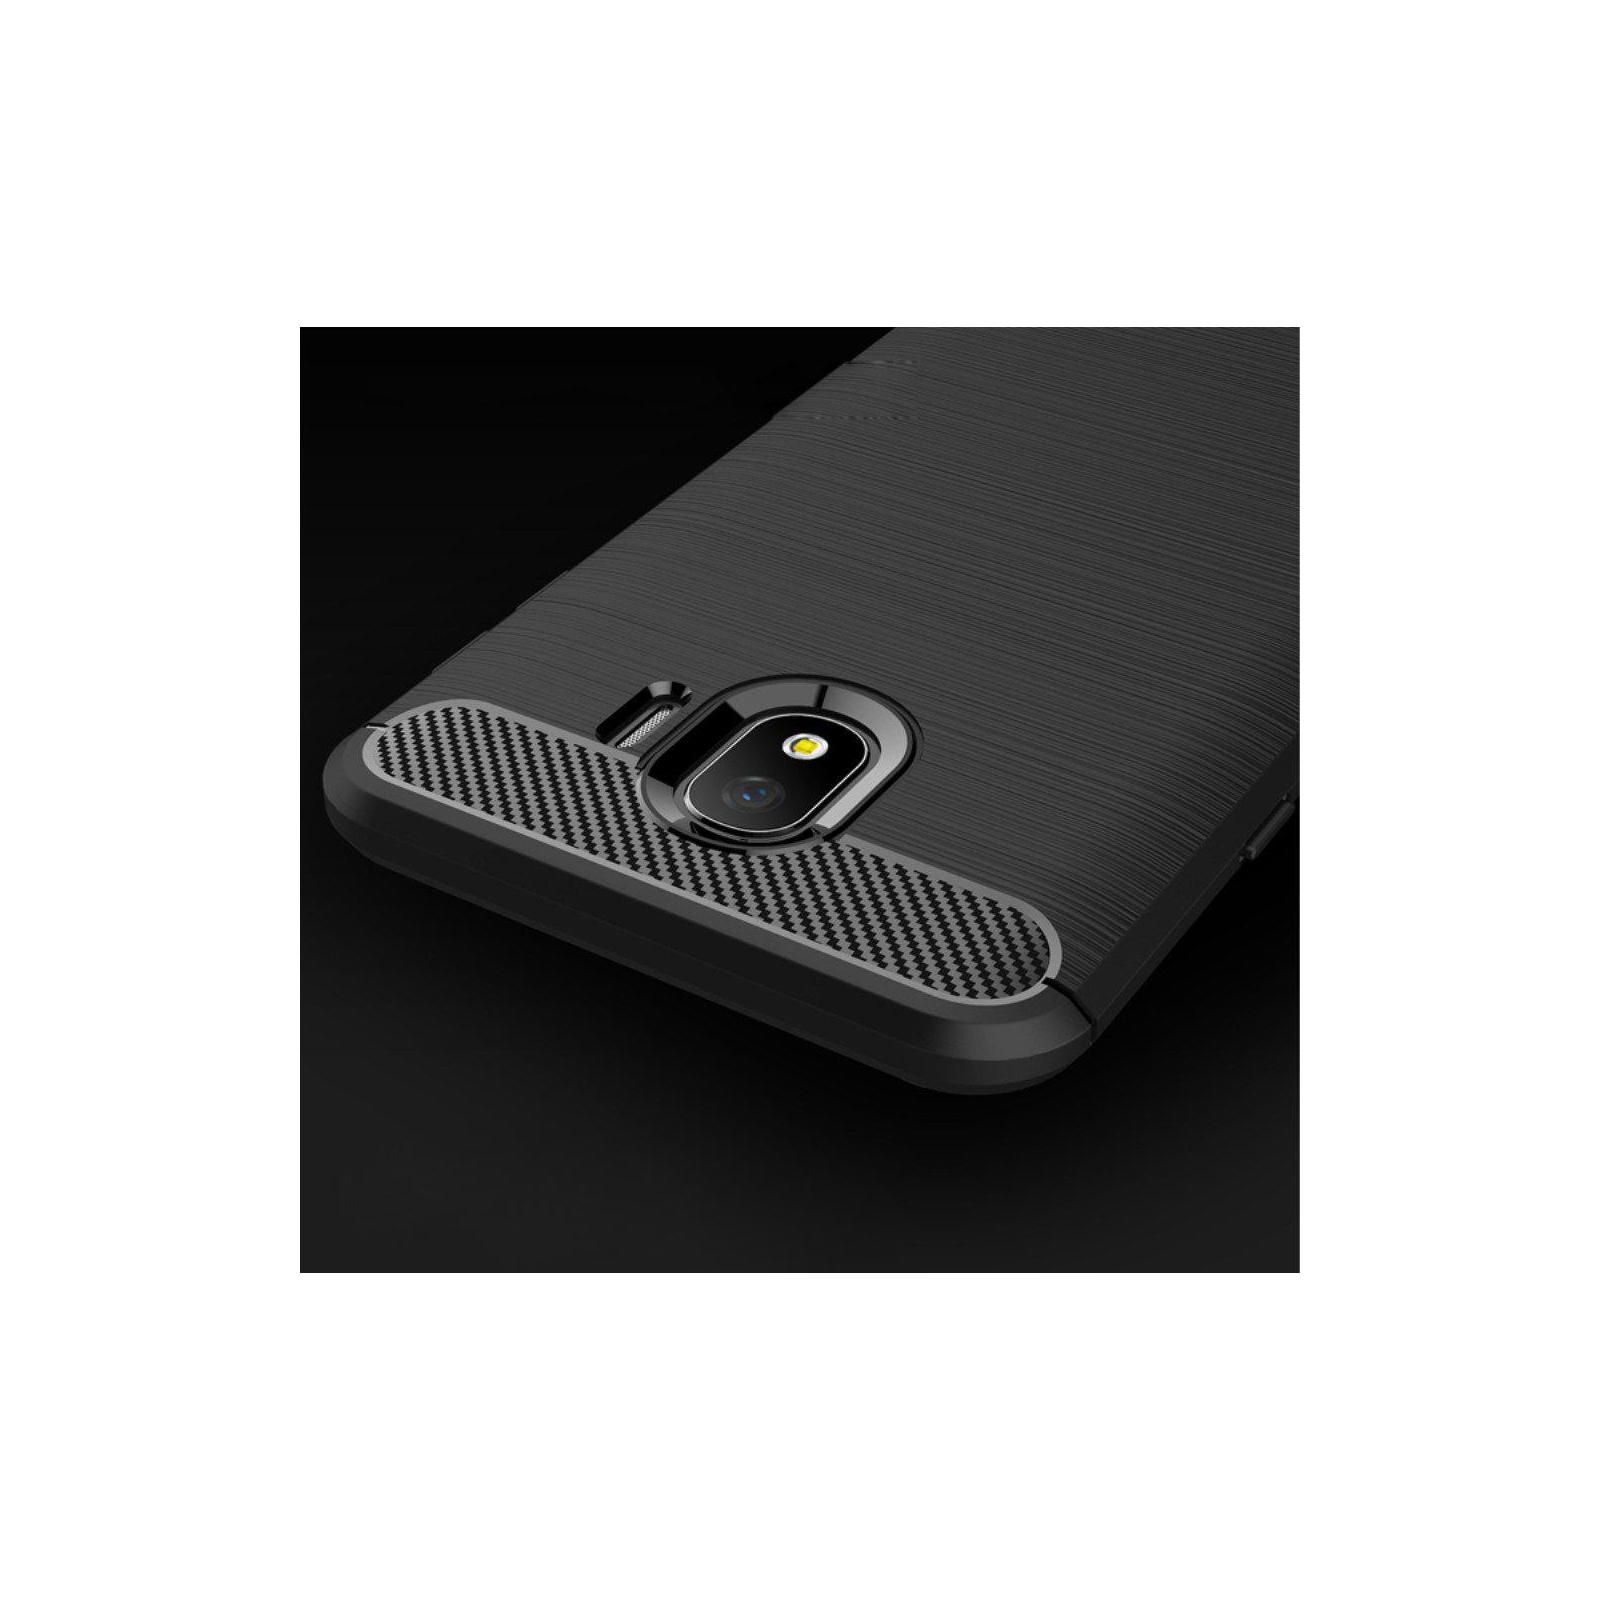 Чехол для мобильного телефона Laudtec для Samsung J4/J400 Carbon Fiber (Black) (LT-J400F) изображение 8